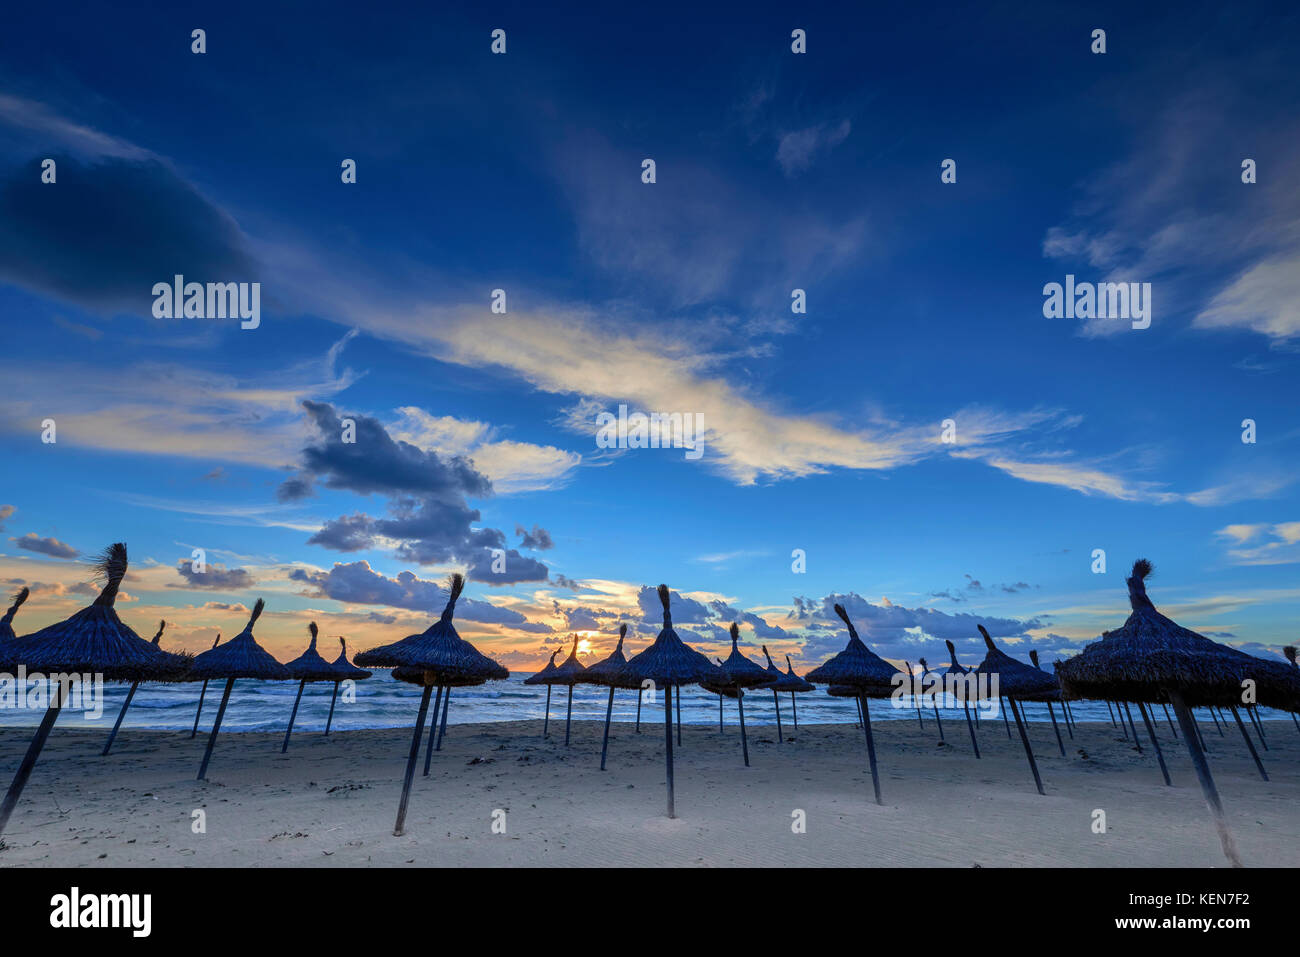 Spagna Baleari Maiorca playa de palma: drammatico tramonto durante una giornata invernale presso la spiaggia di playa de palma Foto Stock